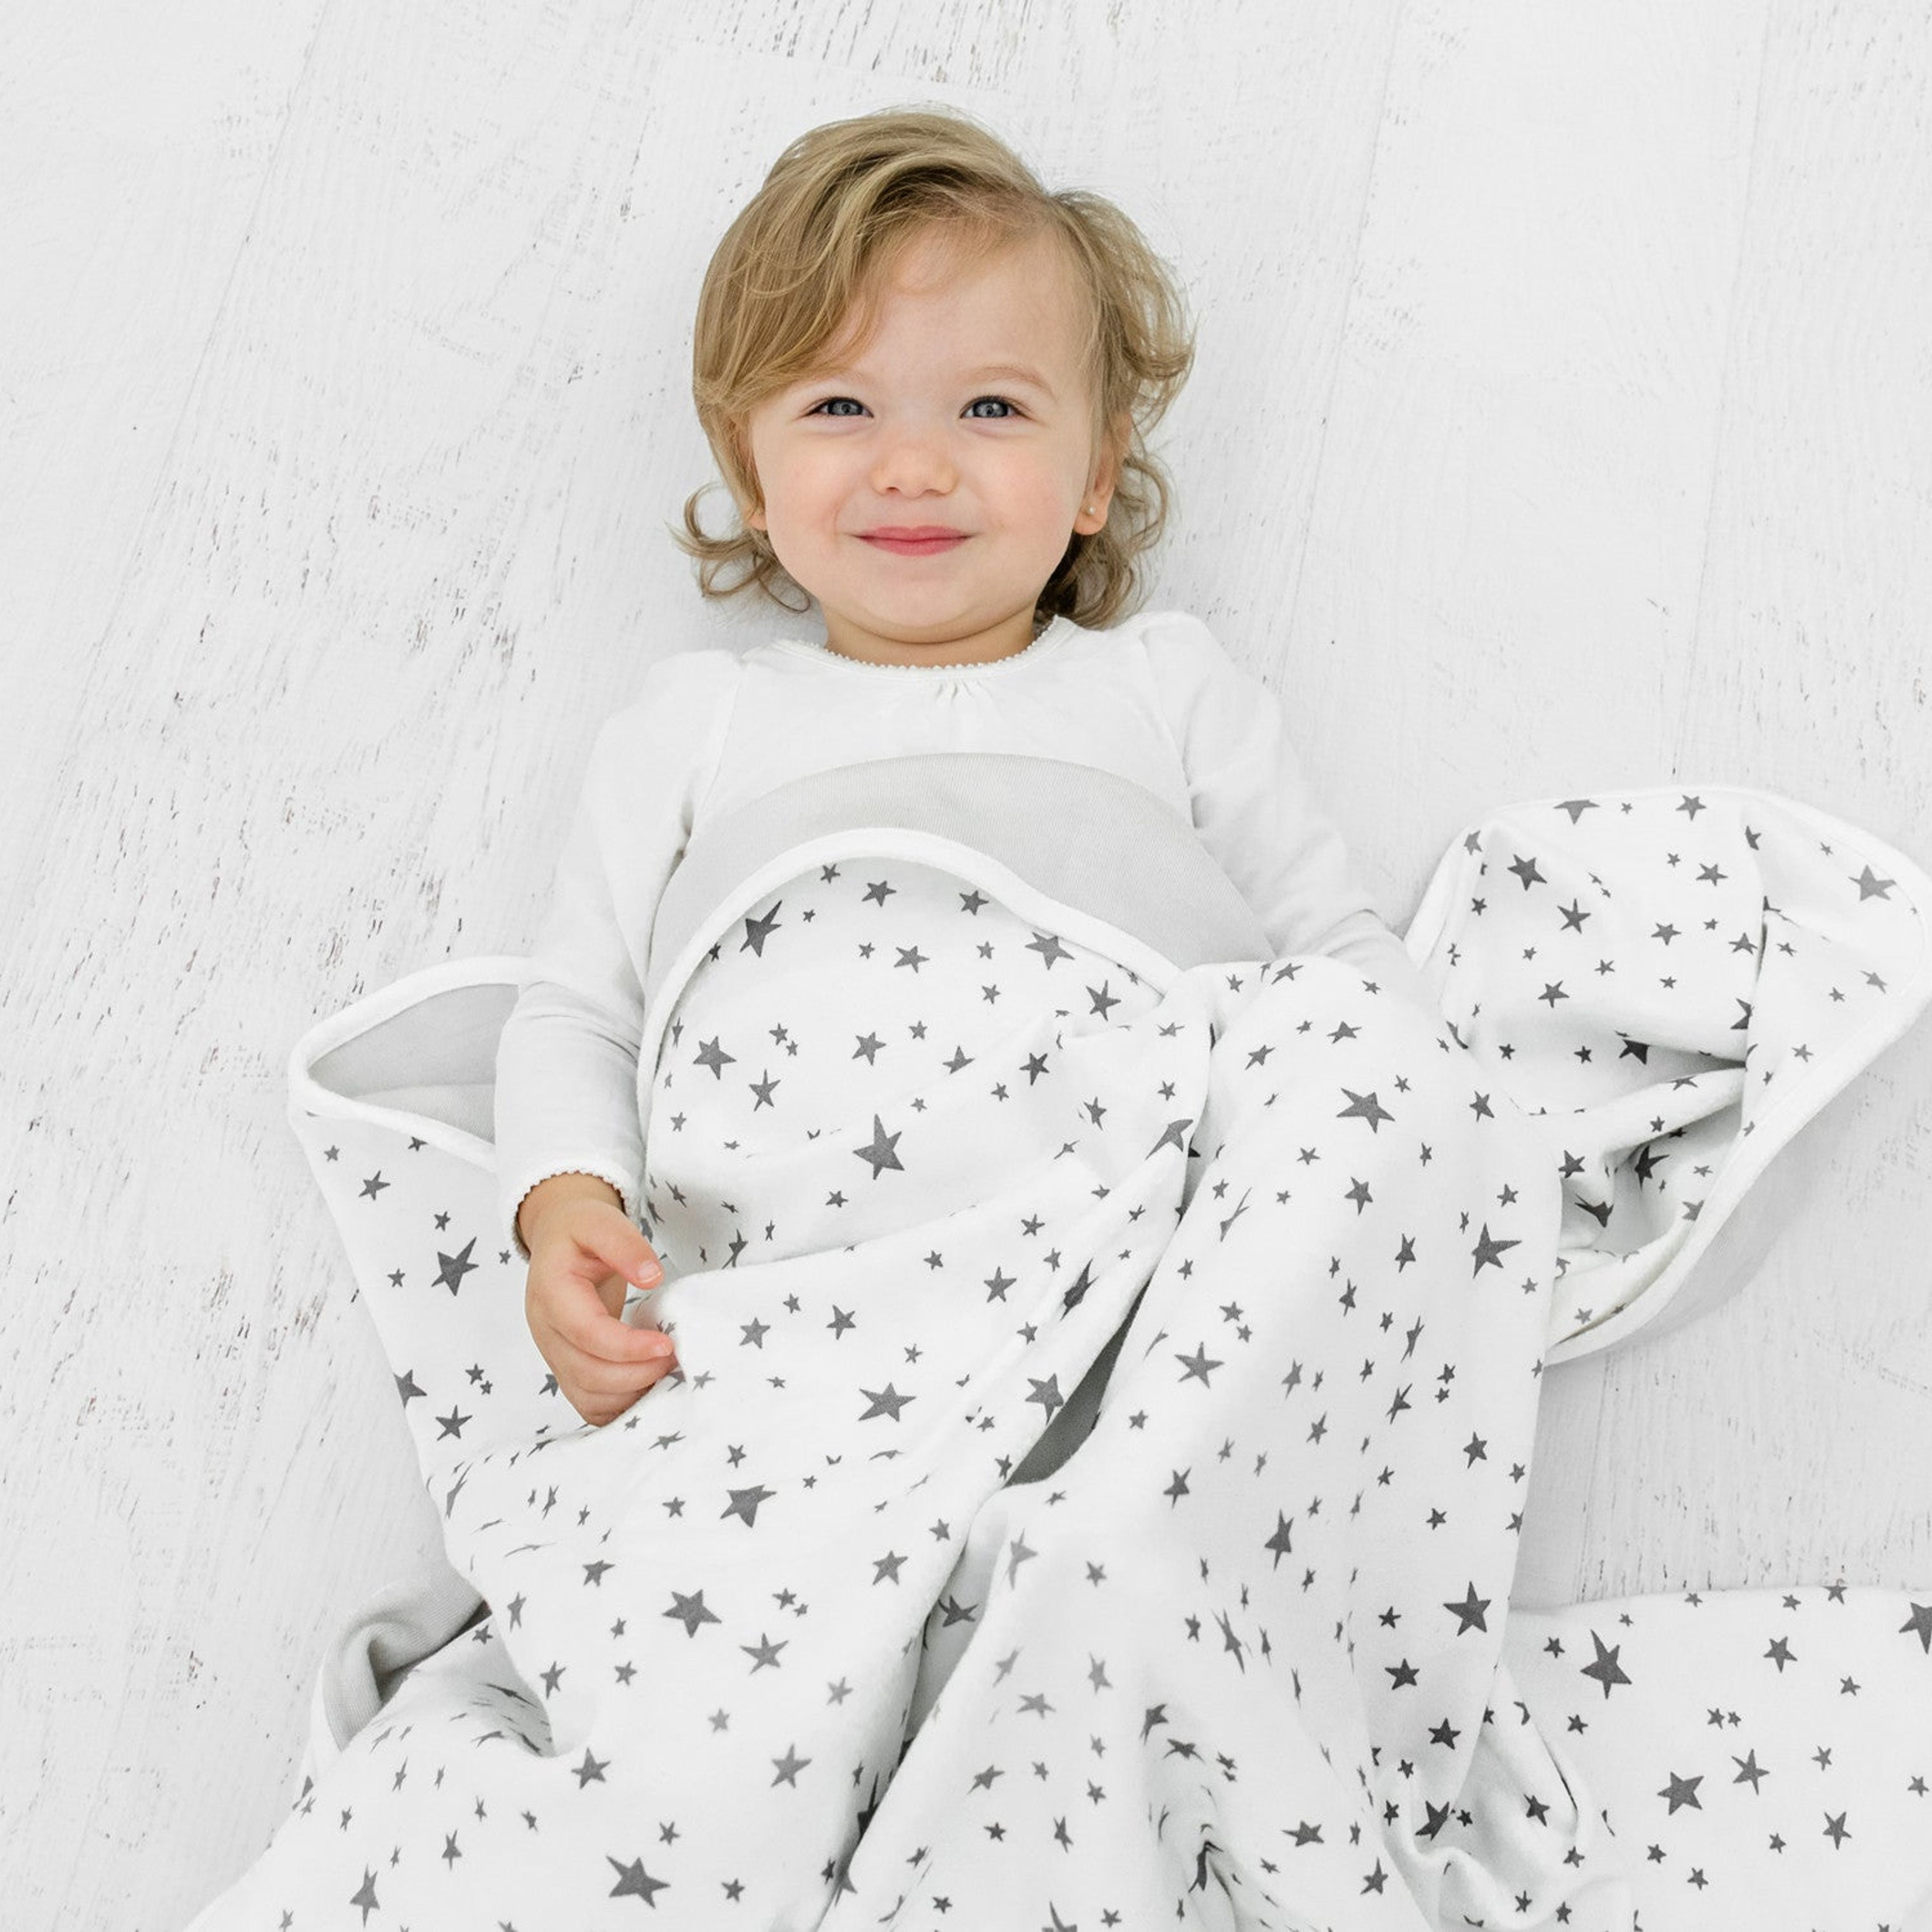 Toddler Blanket, 4 Season Merino Wool & Organic Cotton, 52.5" x 40", Star White